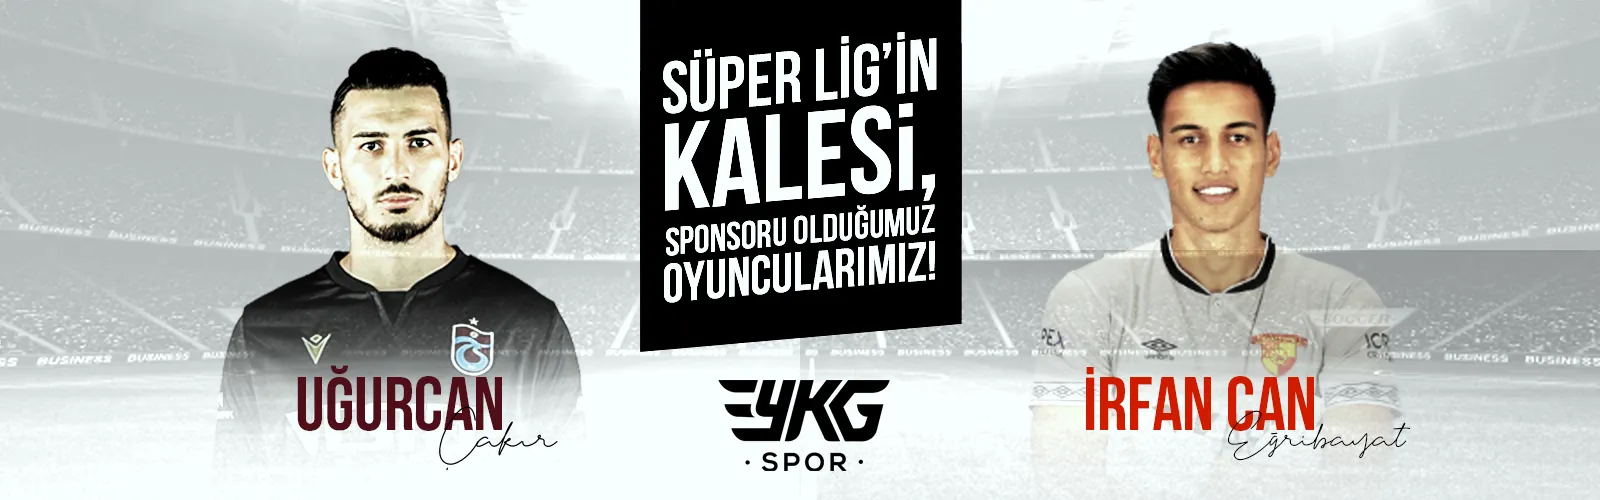 Süper Lig'in kalesi, sponsoru olduğumuz oyuncularımız!